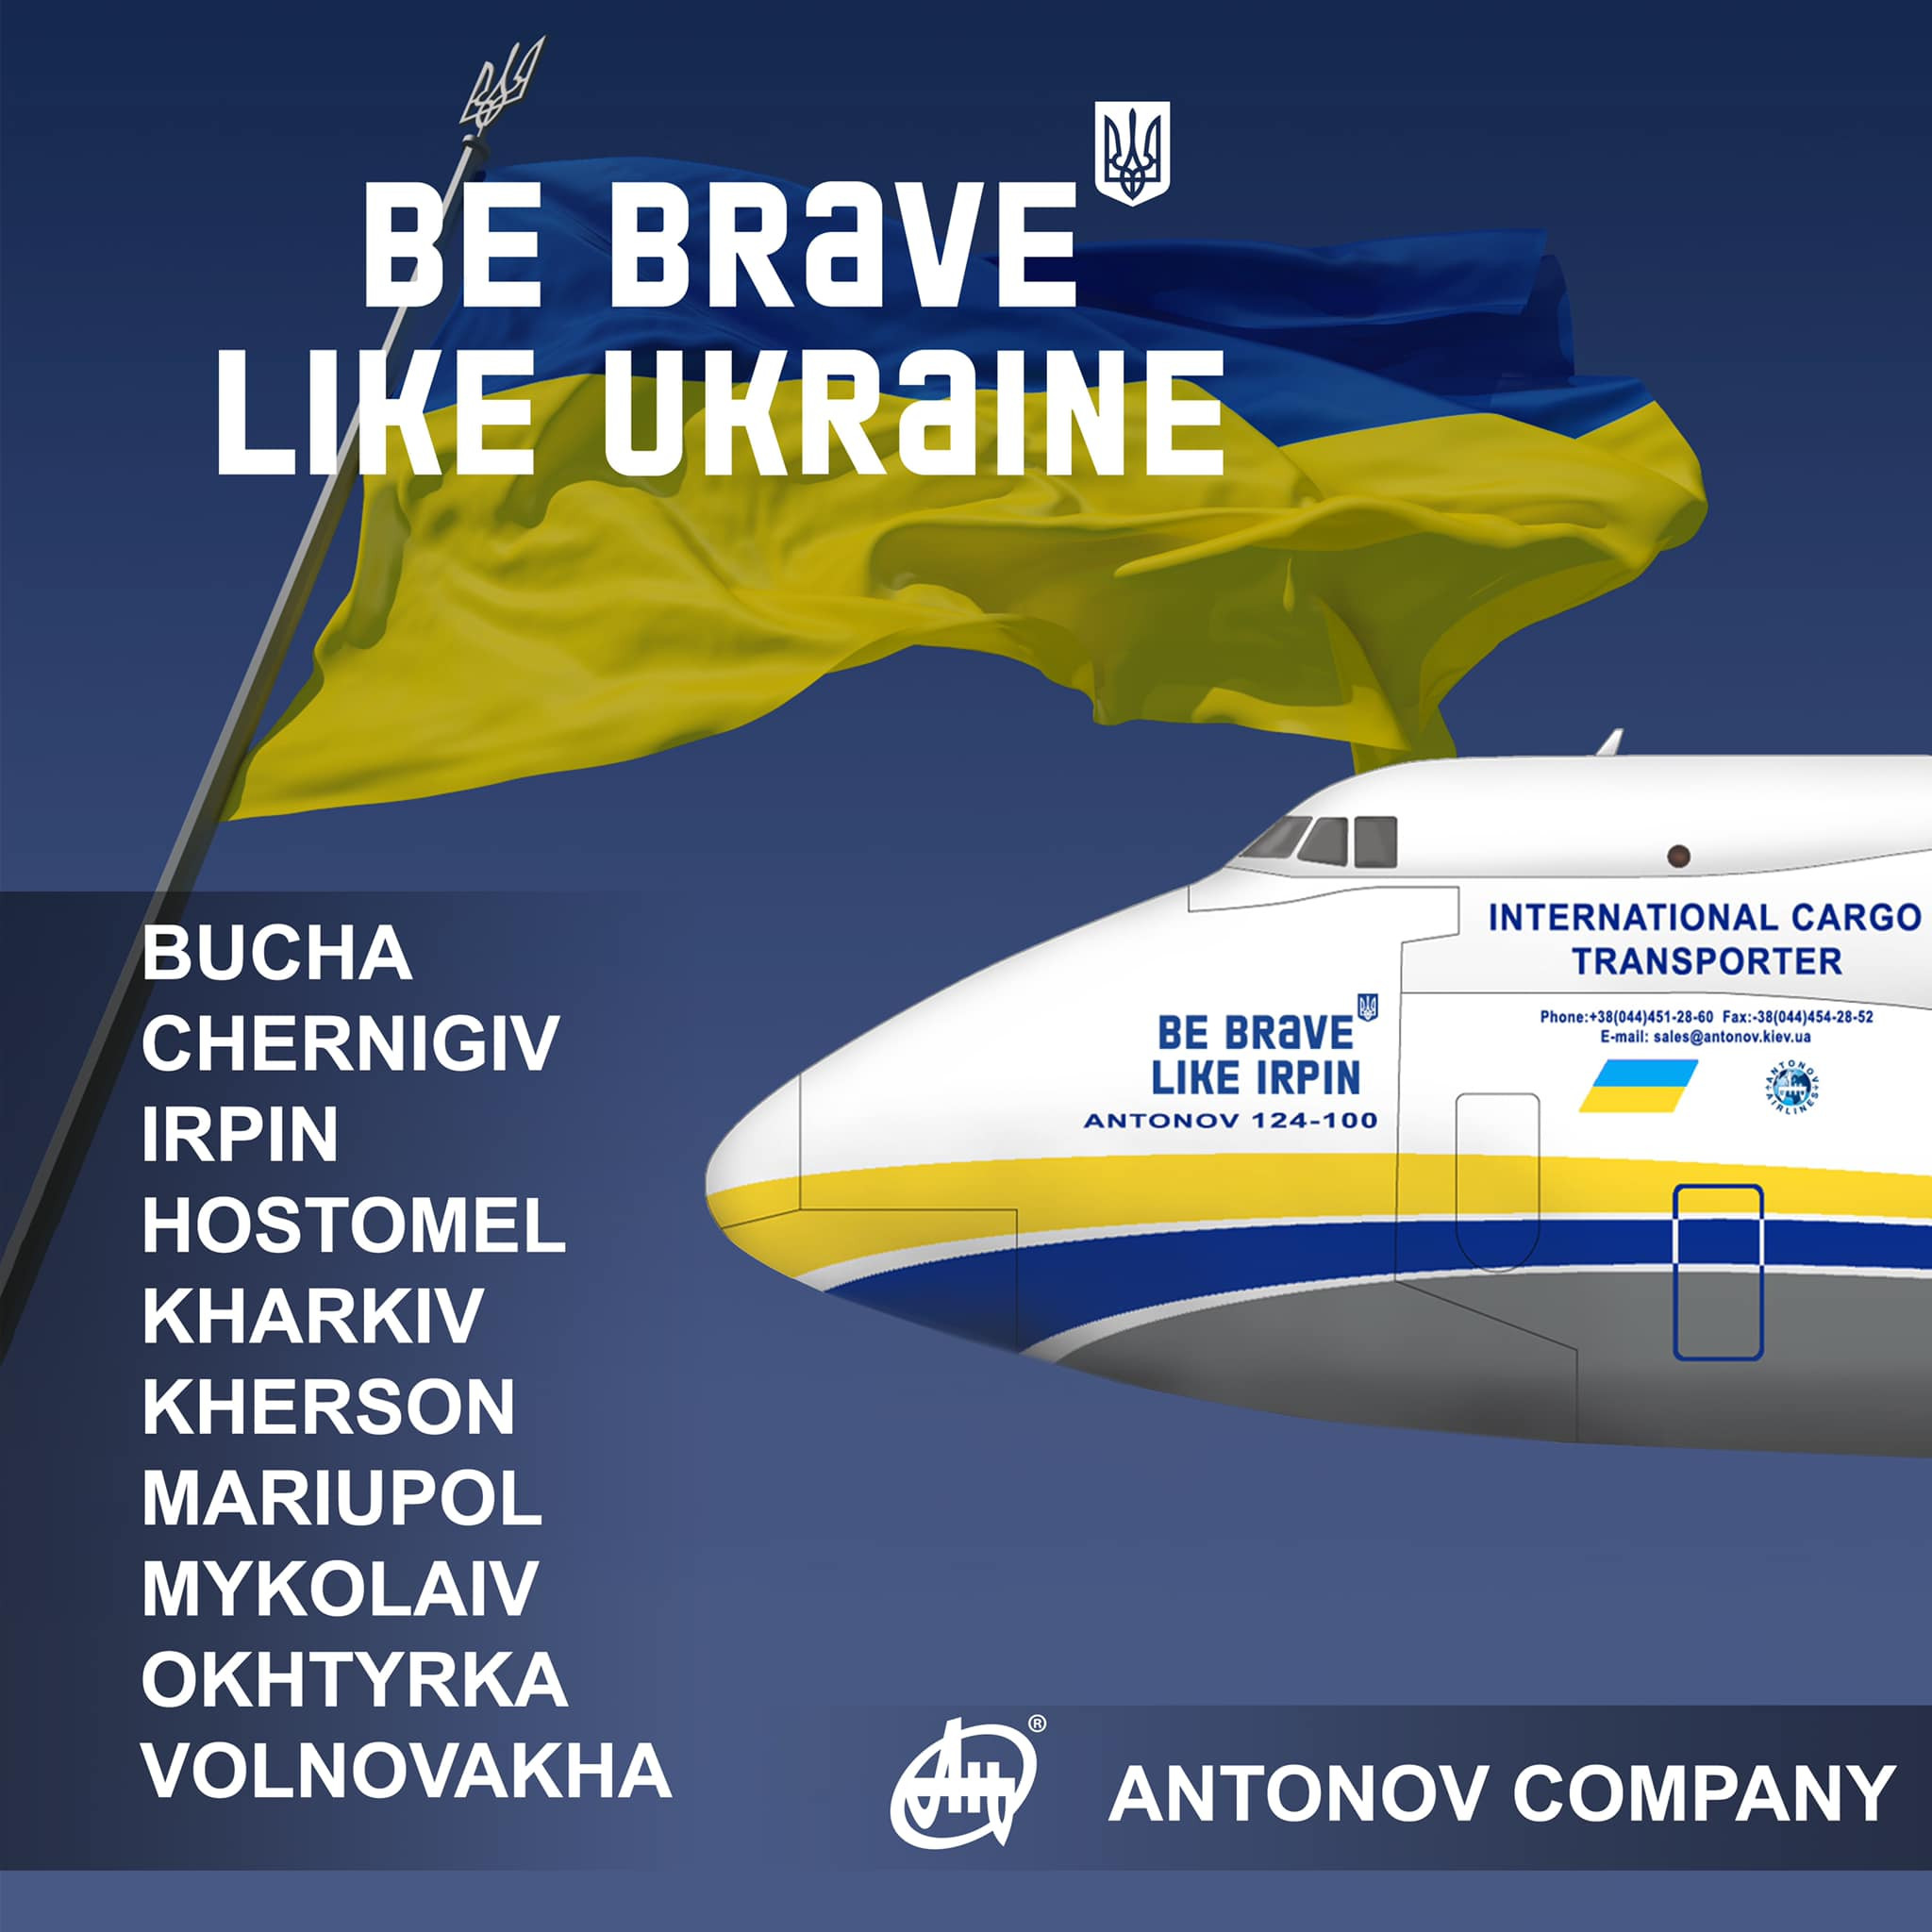 Ірпінь, Буча, Гостомель: найбільші українські літаки отримали імена на честь міст-героїв - зображення